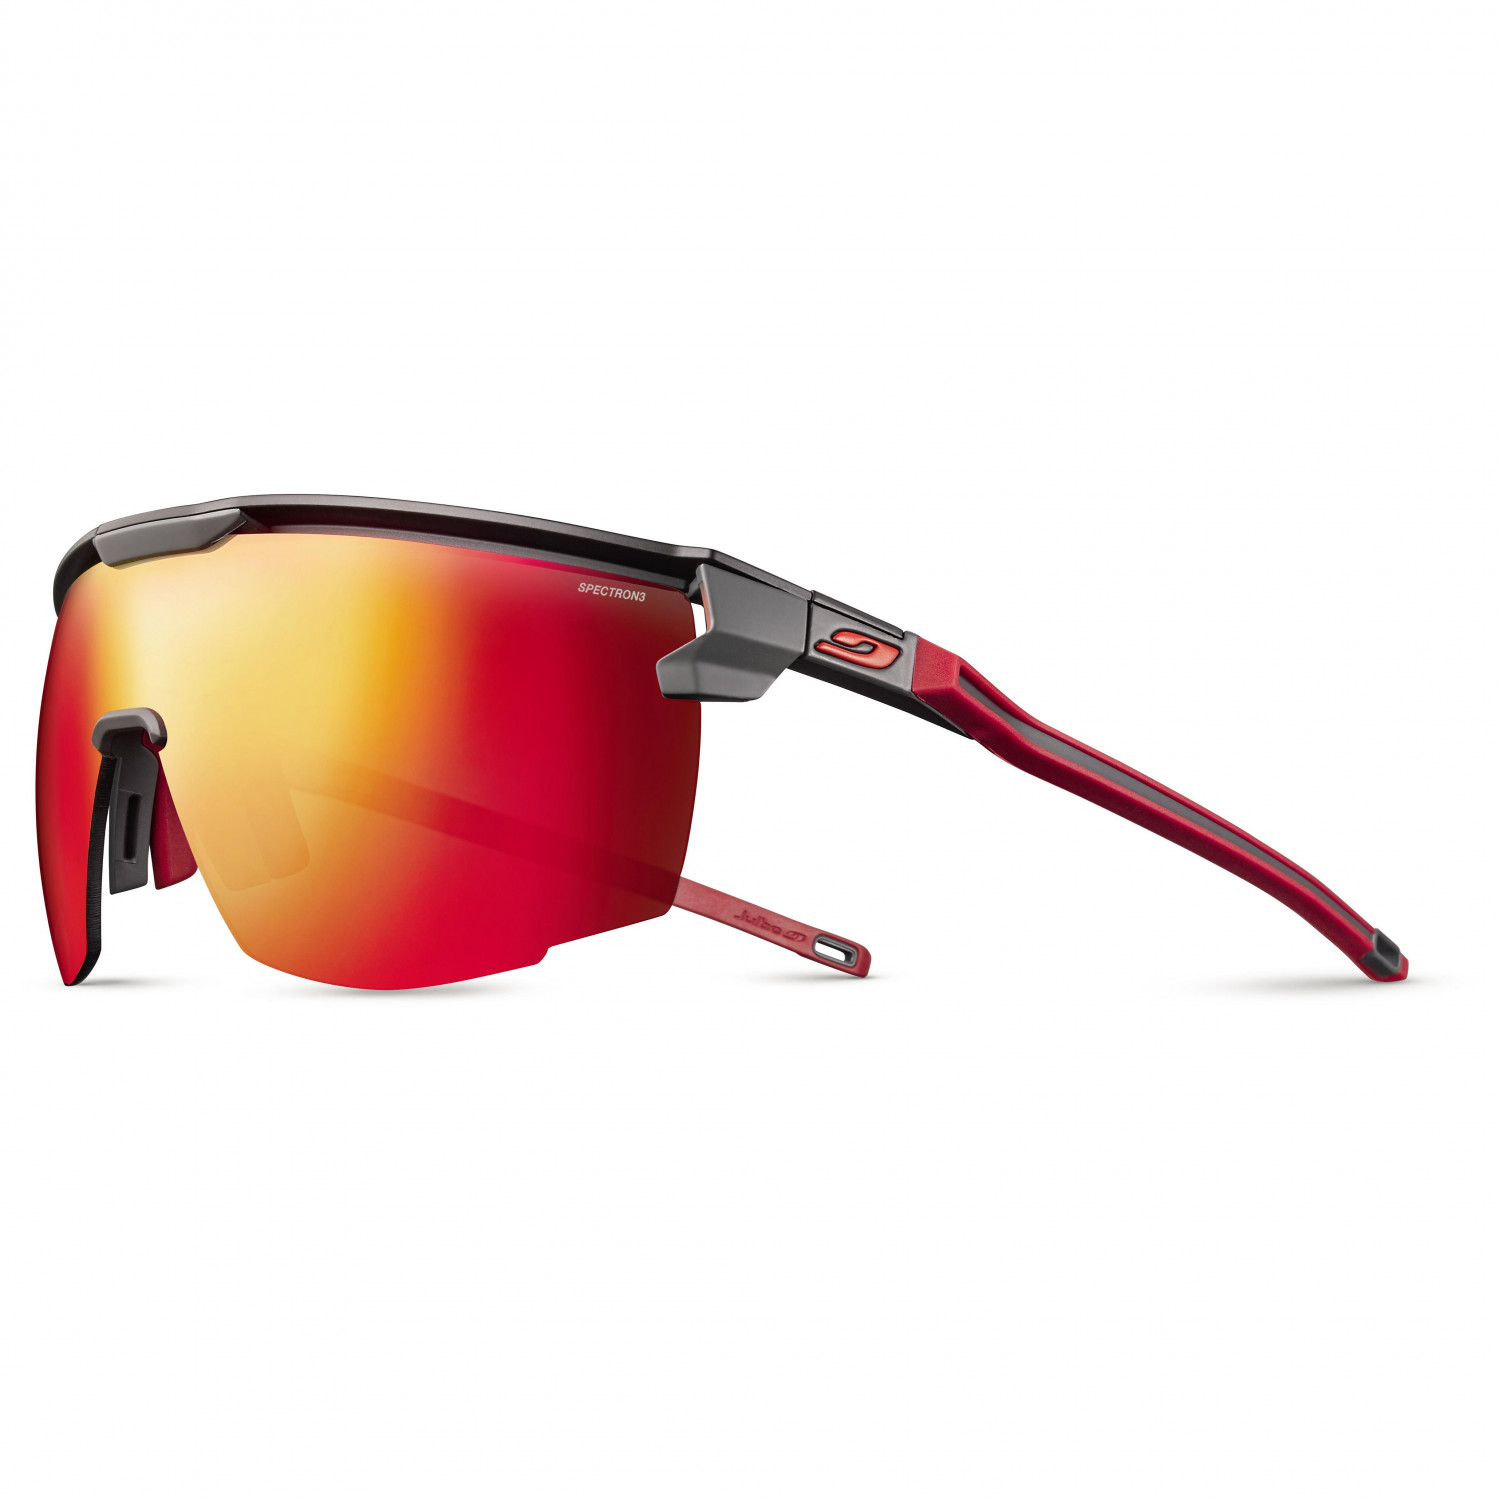 Велосипедные очки Julbo Ultimate S3 (VLT 13%), цвет Black/Red